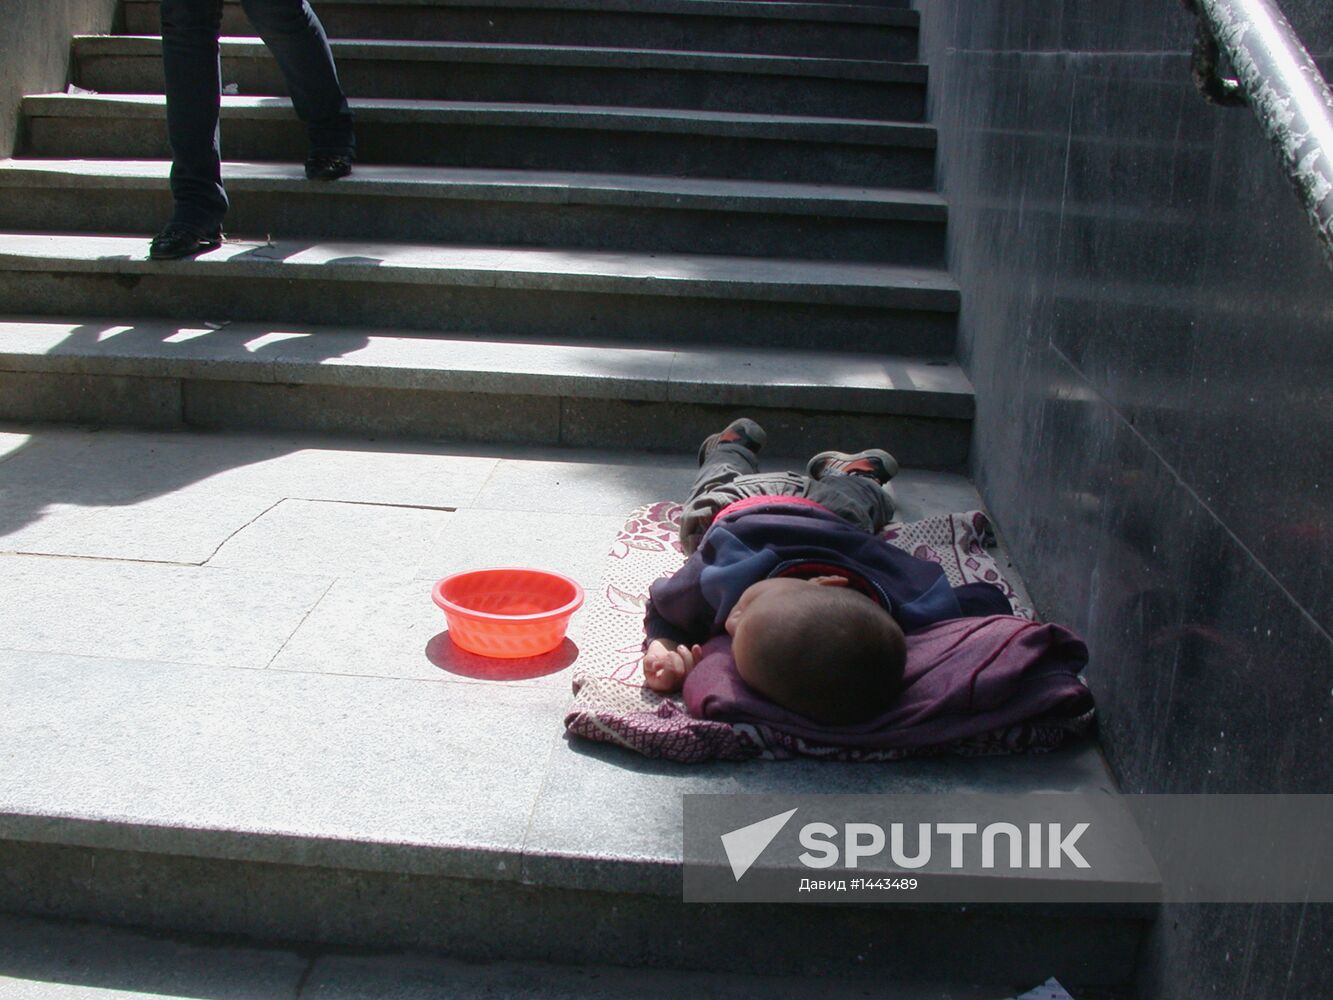 Homeless child